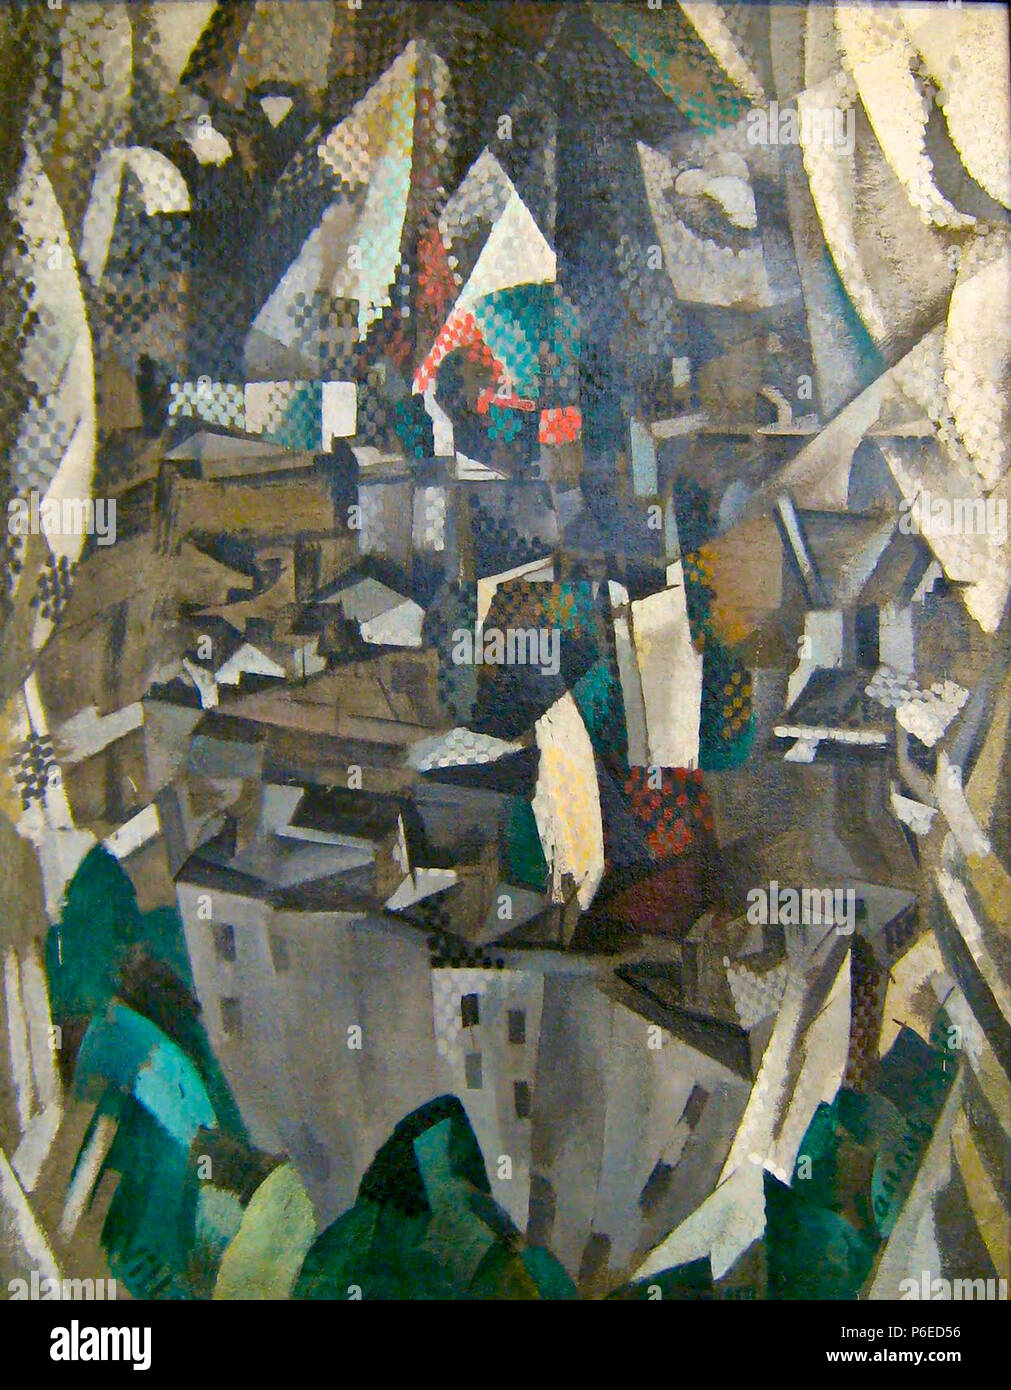 Robert Delaunay, La ville no. 2, 1910 71 Robert Delaunay, 1910, la ville no. 2, huile sur toile, 146 x 114 cm, Musée National d'Art Moderne, Centre Georges Pompidou, Paris Banque D'Images